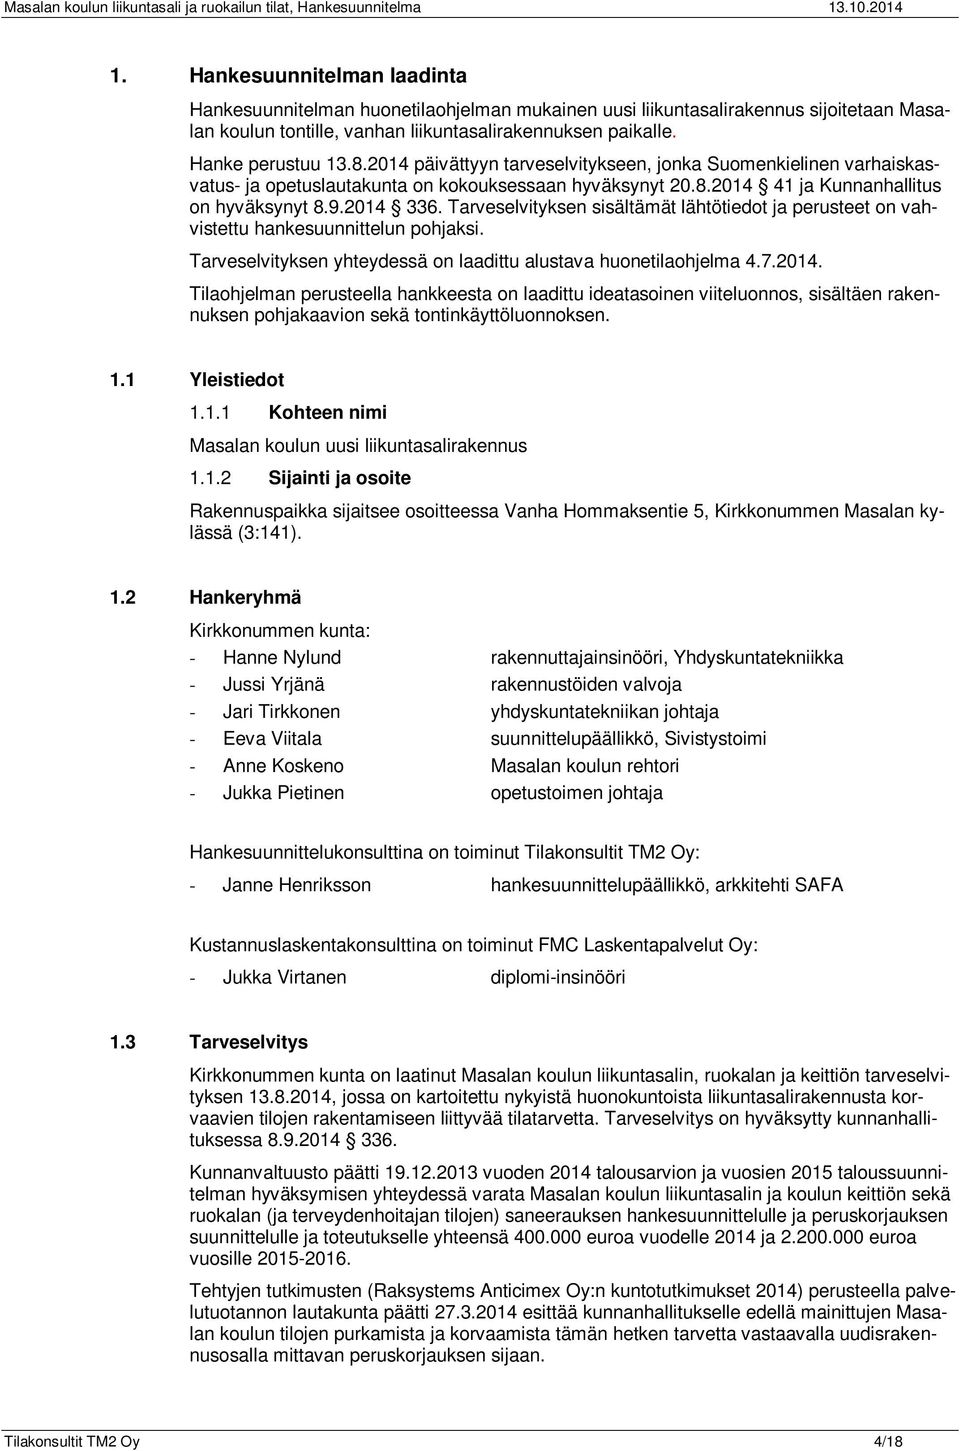 2014 päivättyyn tarveselvitykseen, jonka Suomenkielinen varhaiskasvatus- ja opetuslautakunta on kokouksessaan hyväksynyt 20.8.2014 41 ja Kunnanhallitus on hyväksynyt 8.9.2014 336.